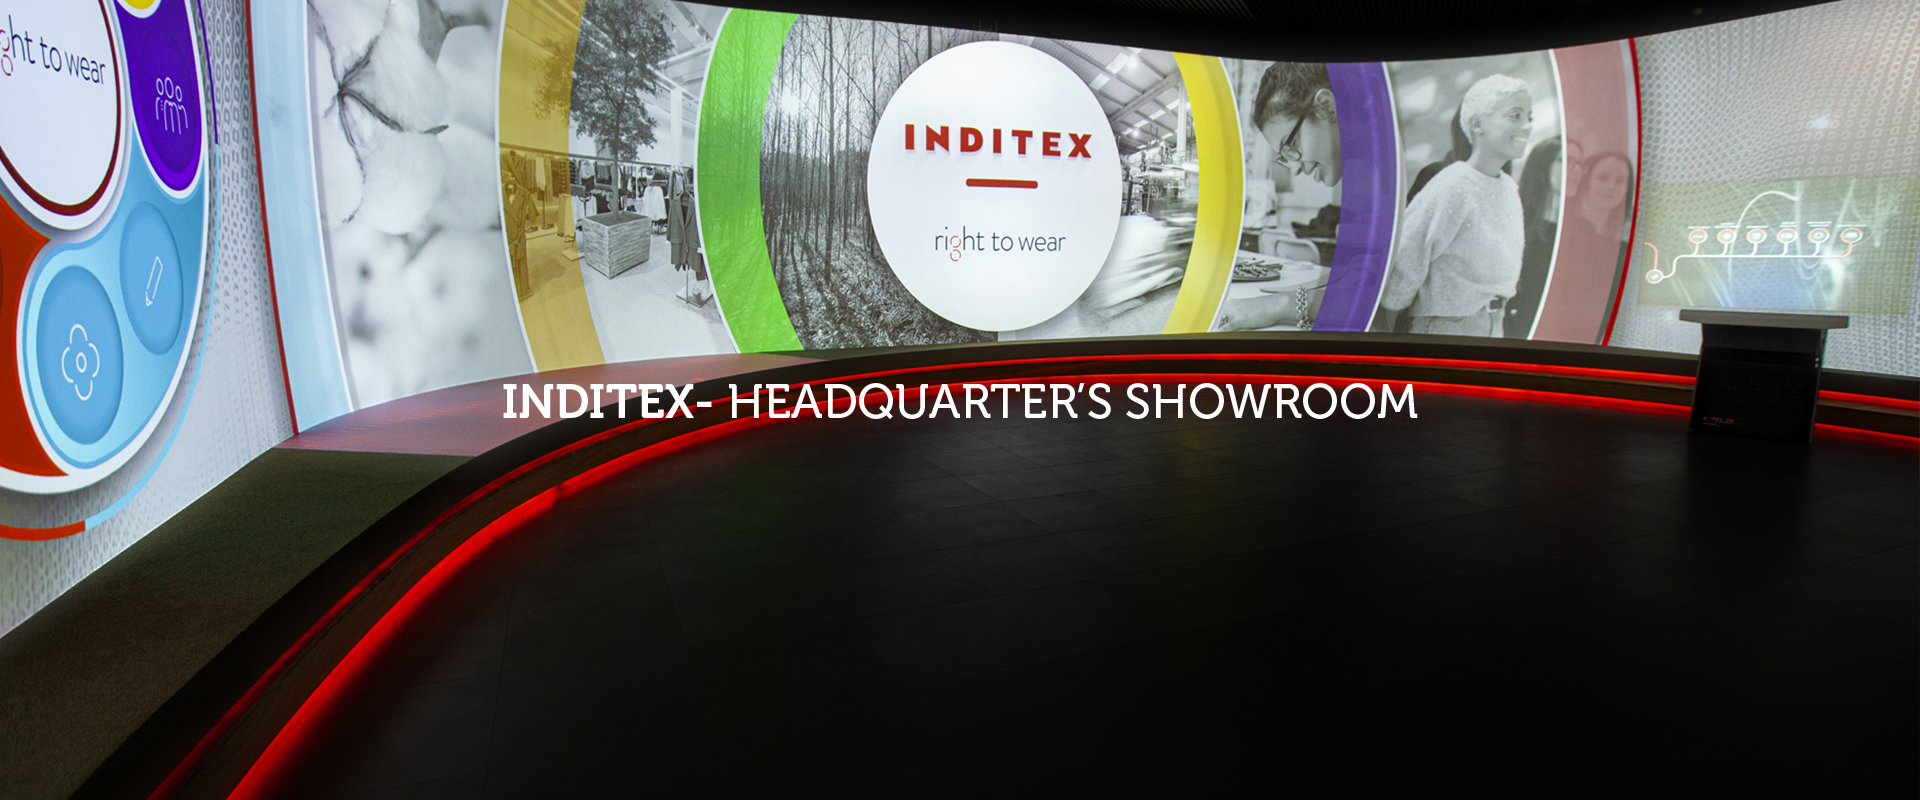 Inditex – Headquater’s Showroom